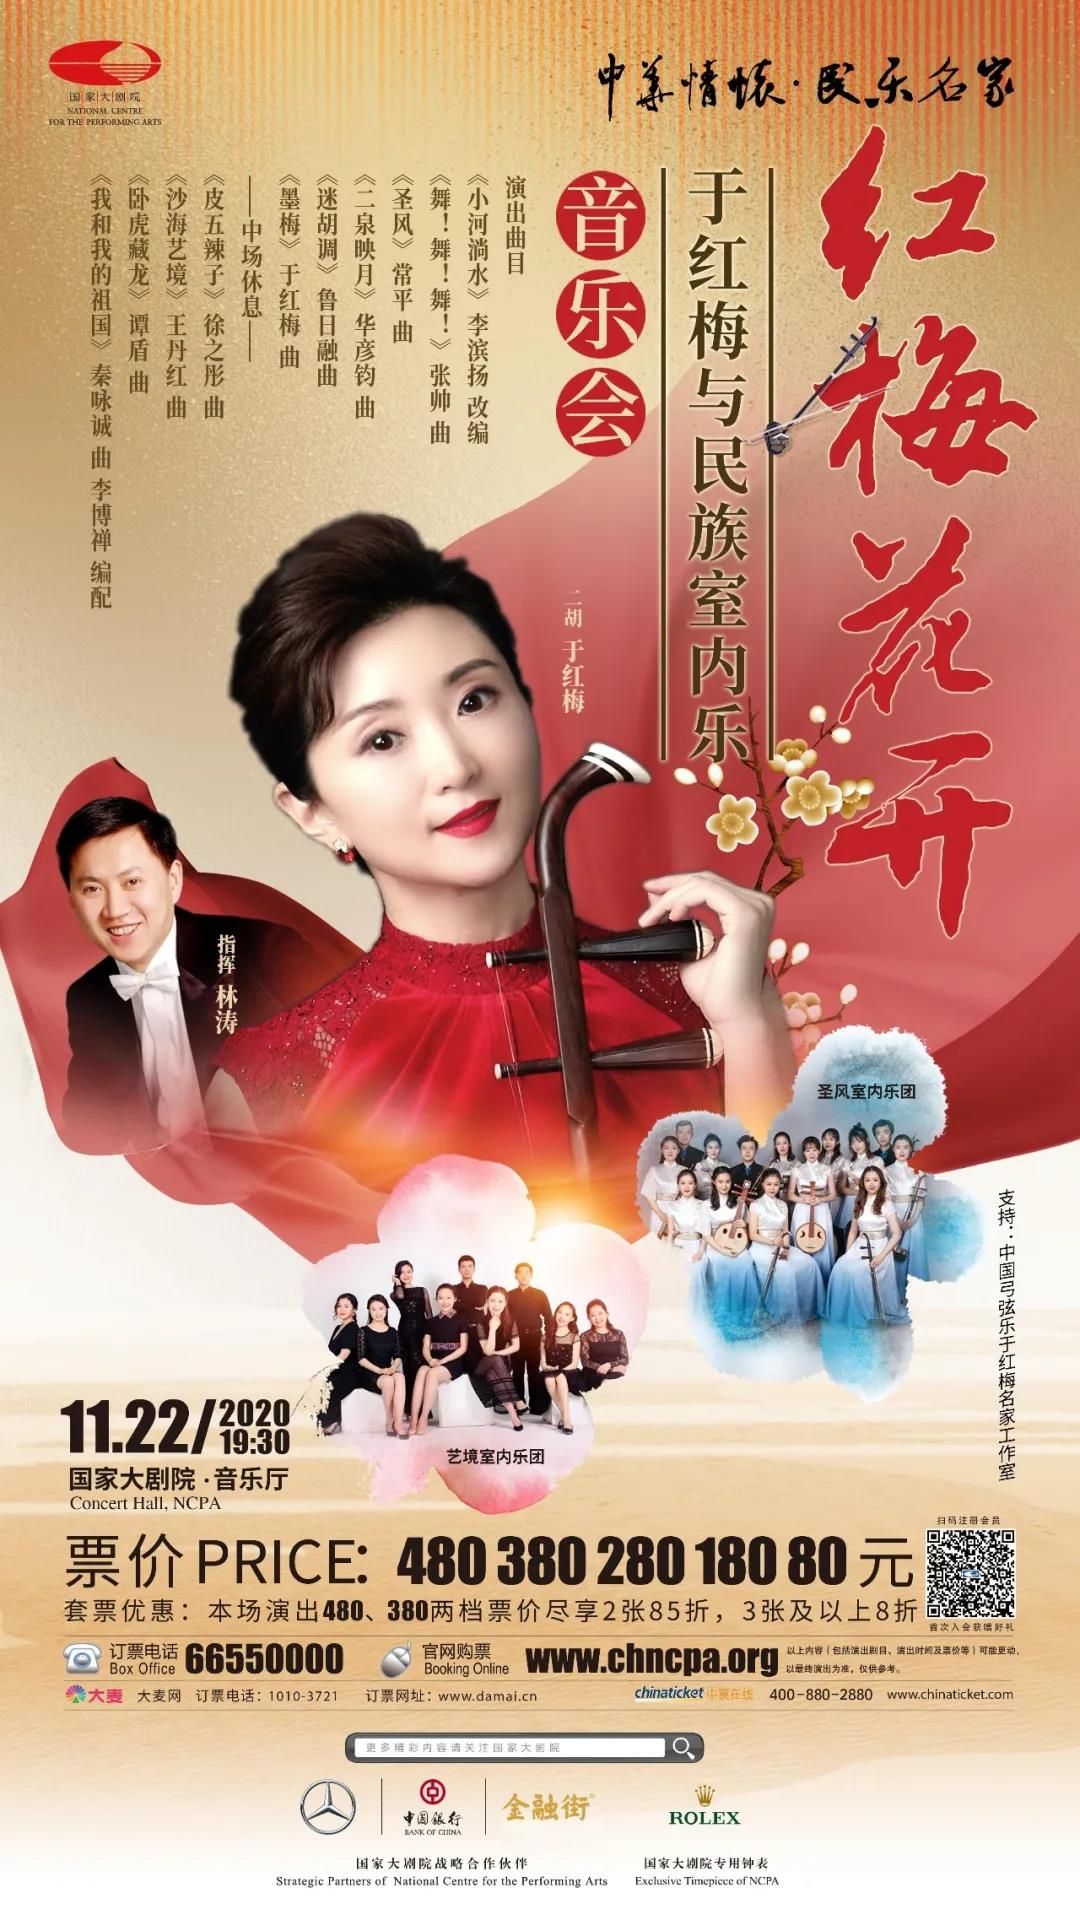 阵容强大，作品经典——“红梅花开”于红梅与民族室内乐音乐会将于11月22日在国家大剧院上演